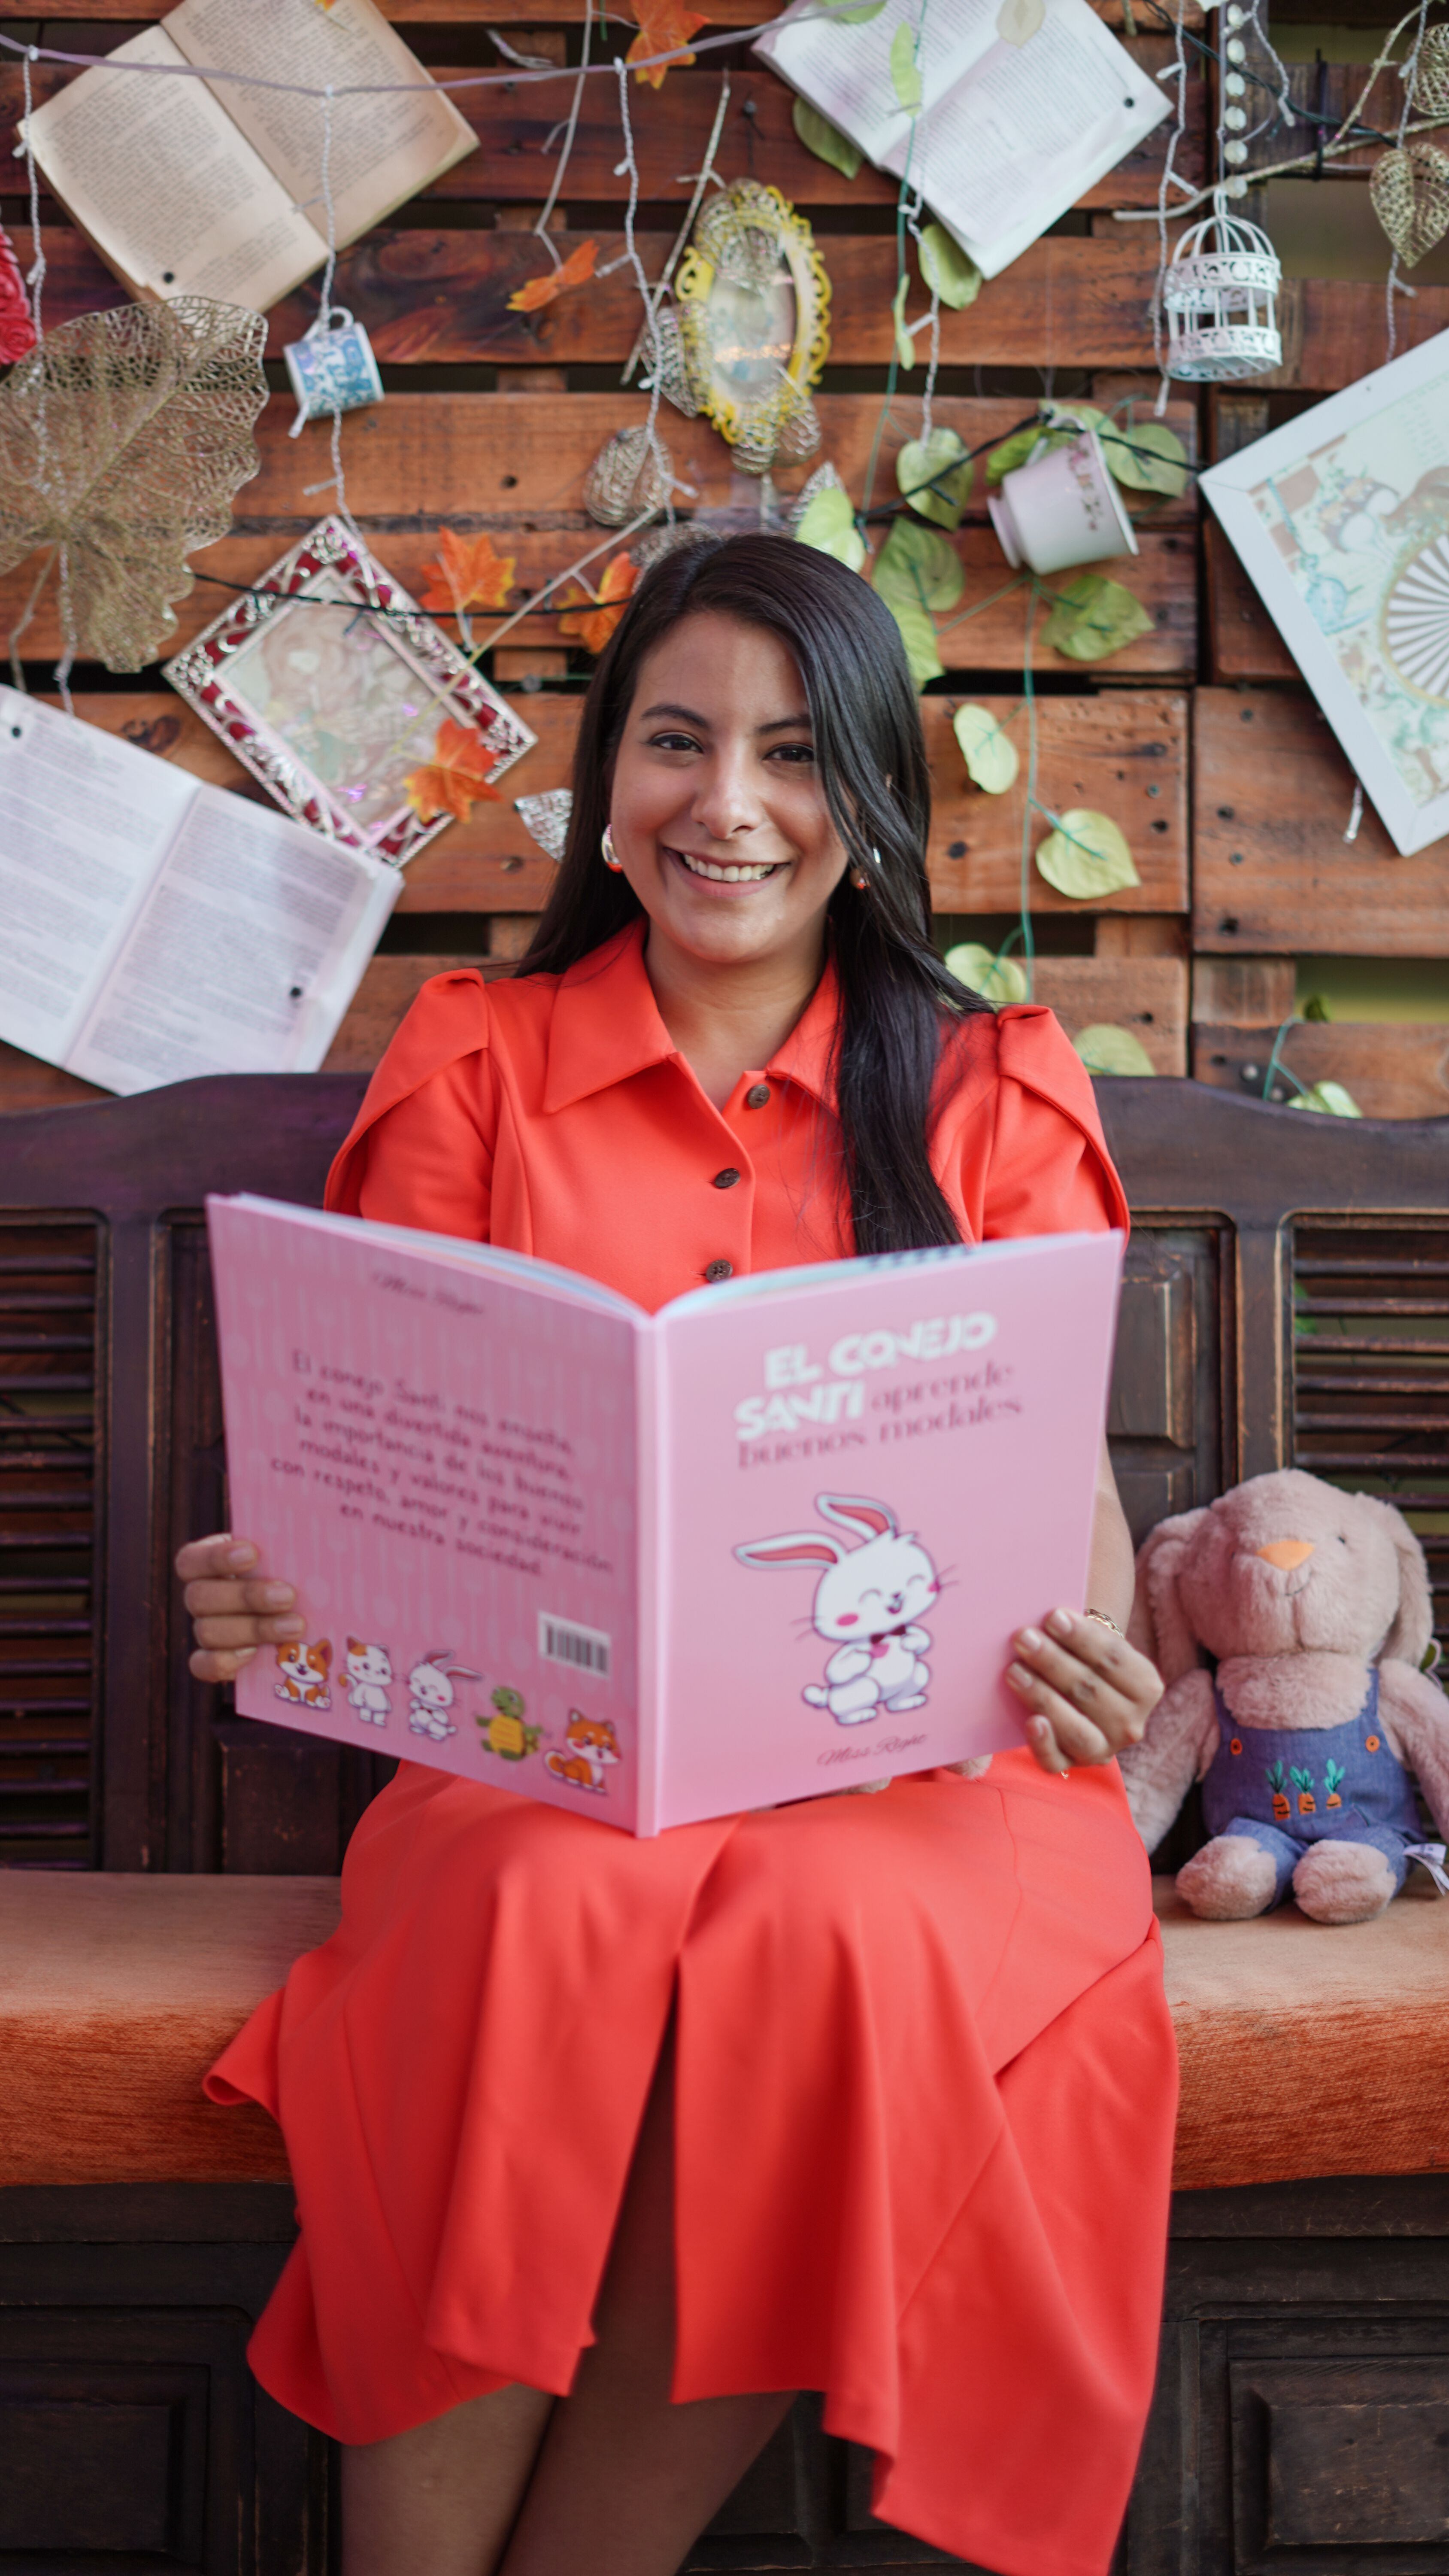 Nadía Díaz (missrightetiqueta), autora de 'El Conejo Santi aprende buenos modales'.